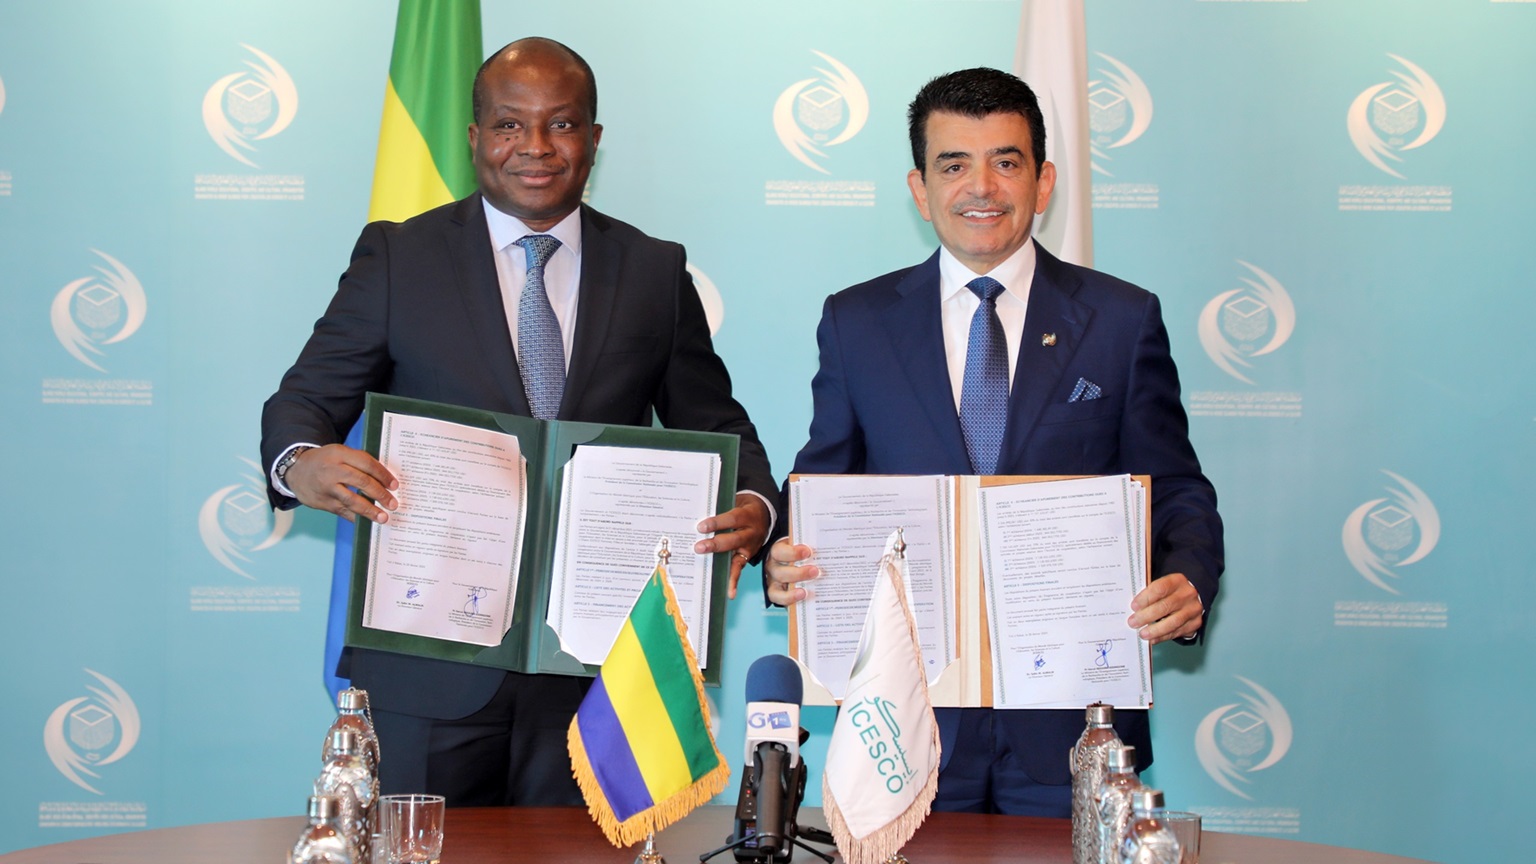 L’ICESCO et le Gabon signent un accord pour la mise en œuvre de programmes dans les domaines de l’éducation, de la science et de la culture